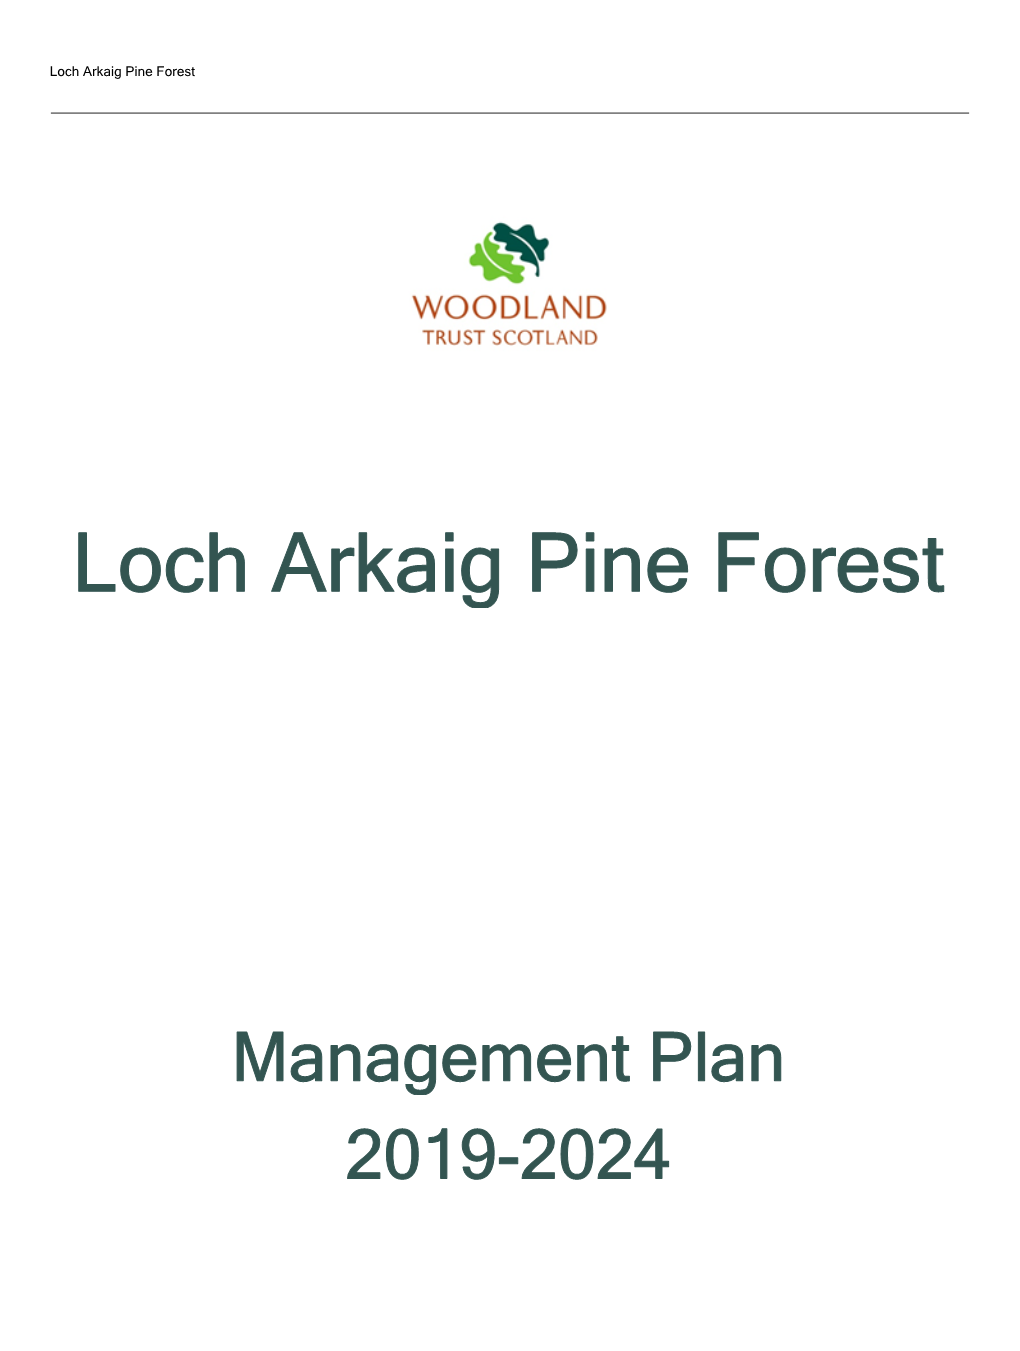 Download Loch Arkaig Pine Forest Management